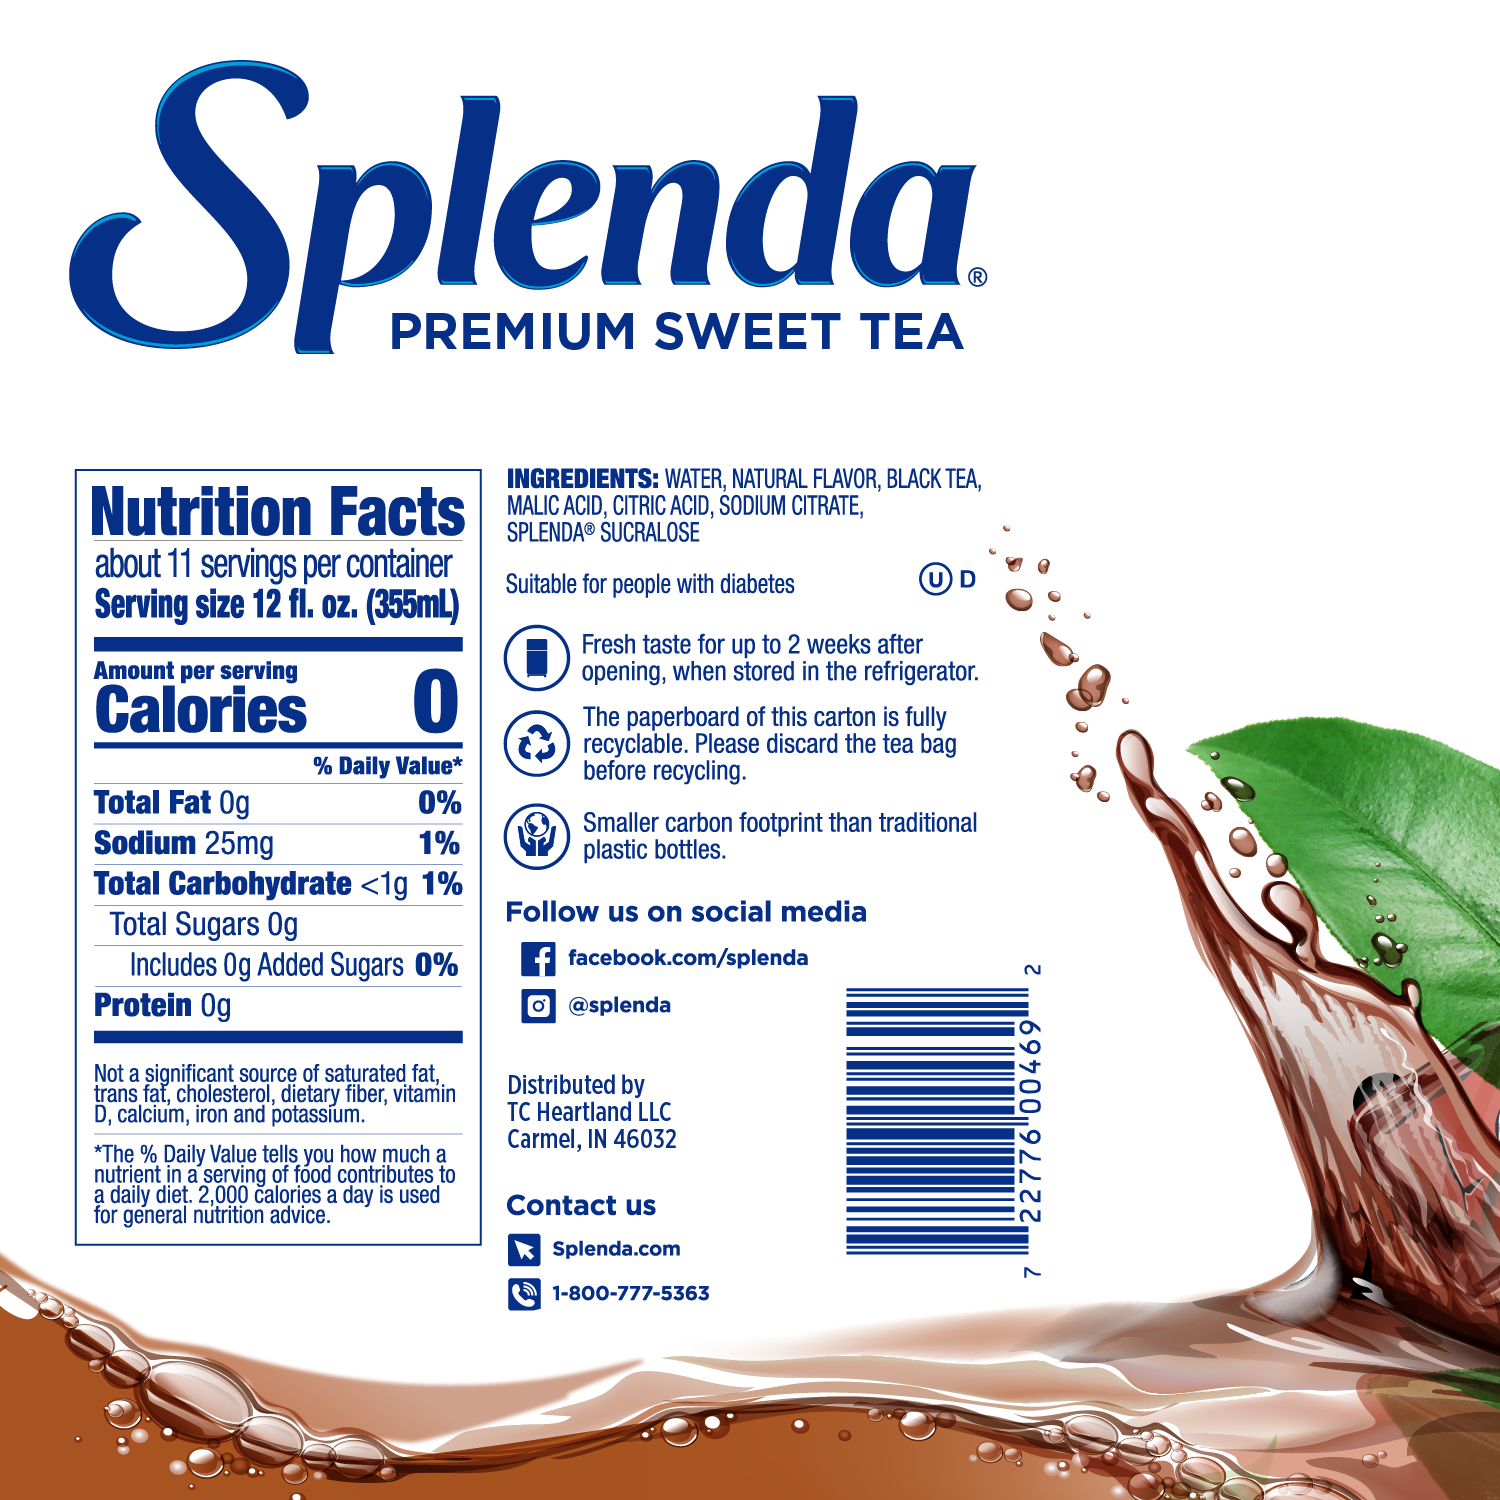 Splenda Sweet Tea - Nutrition Facts Panel